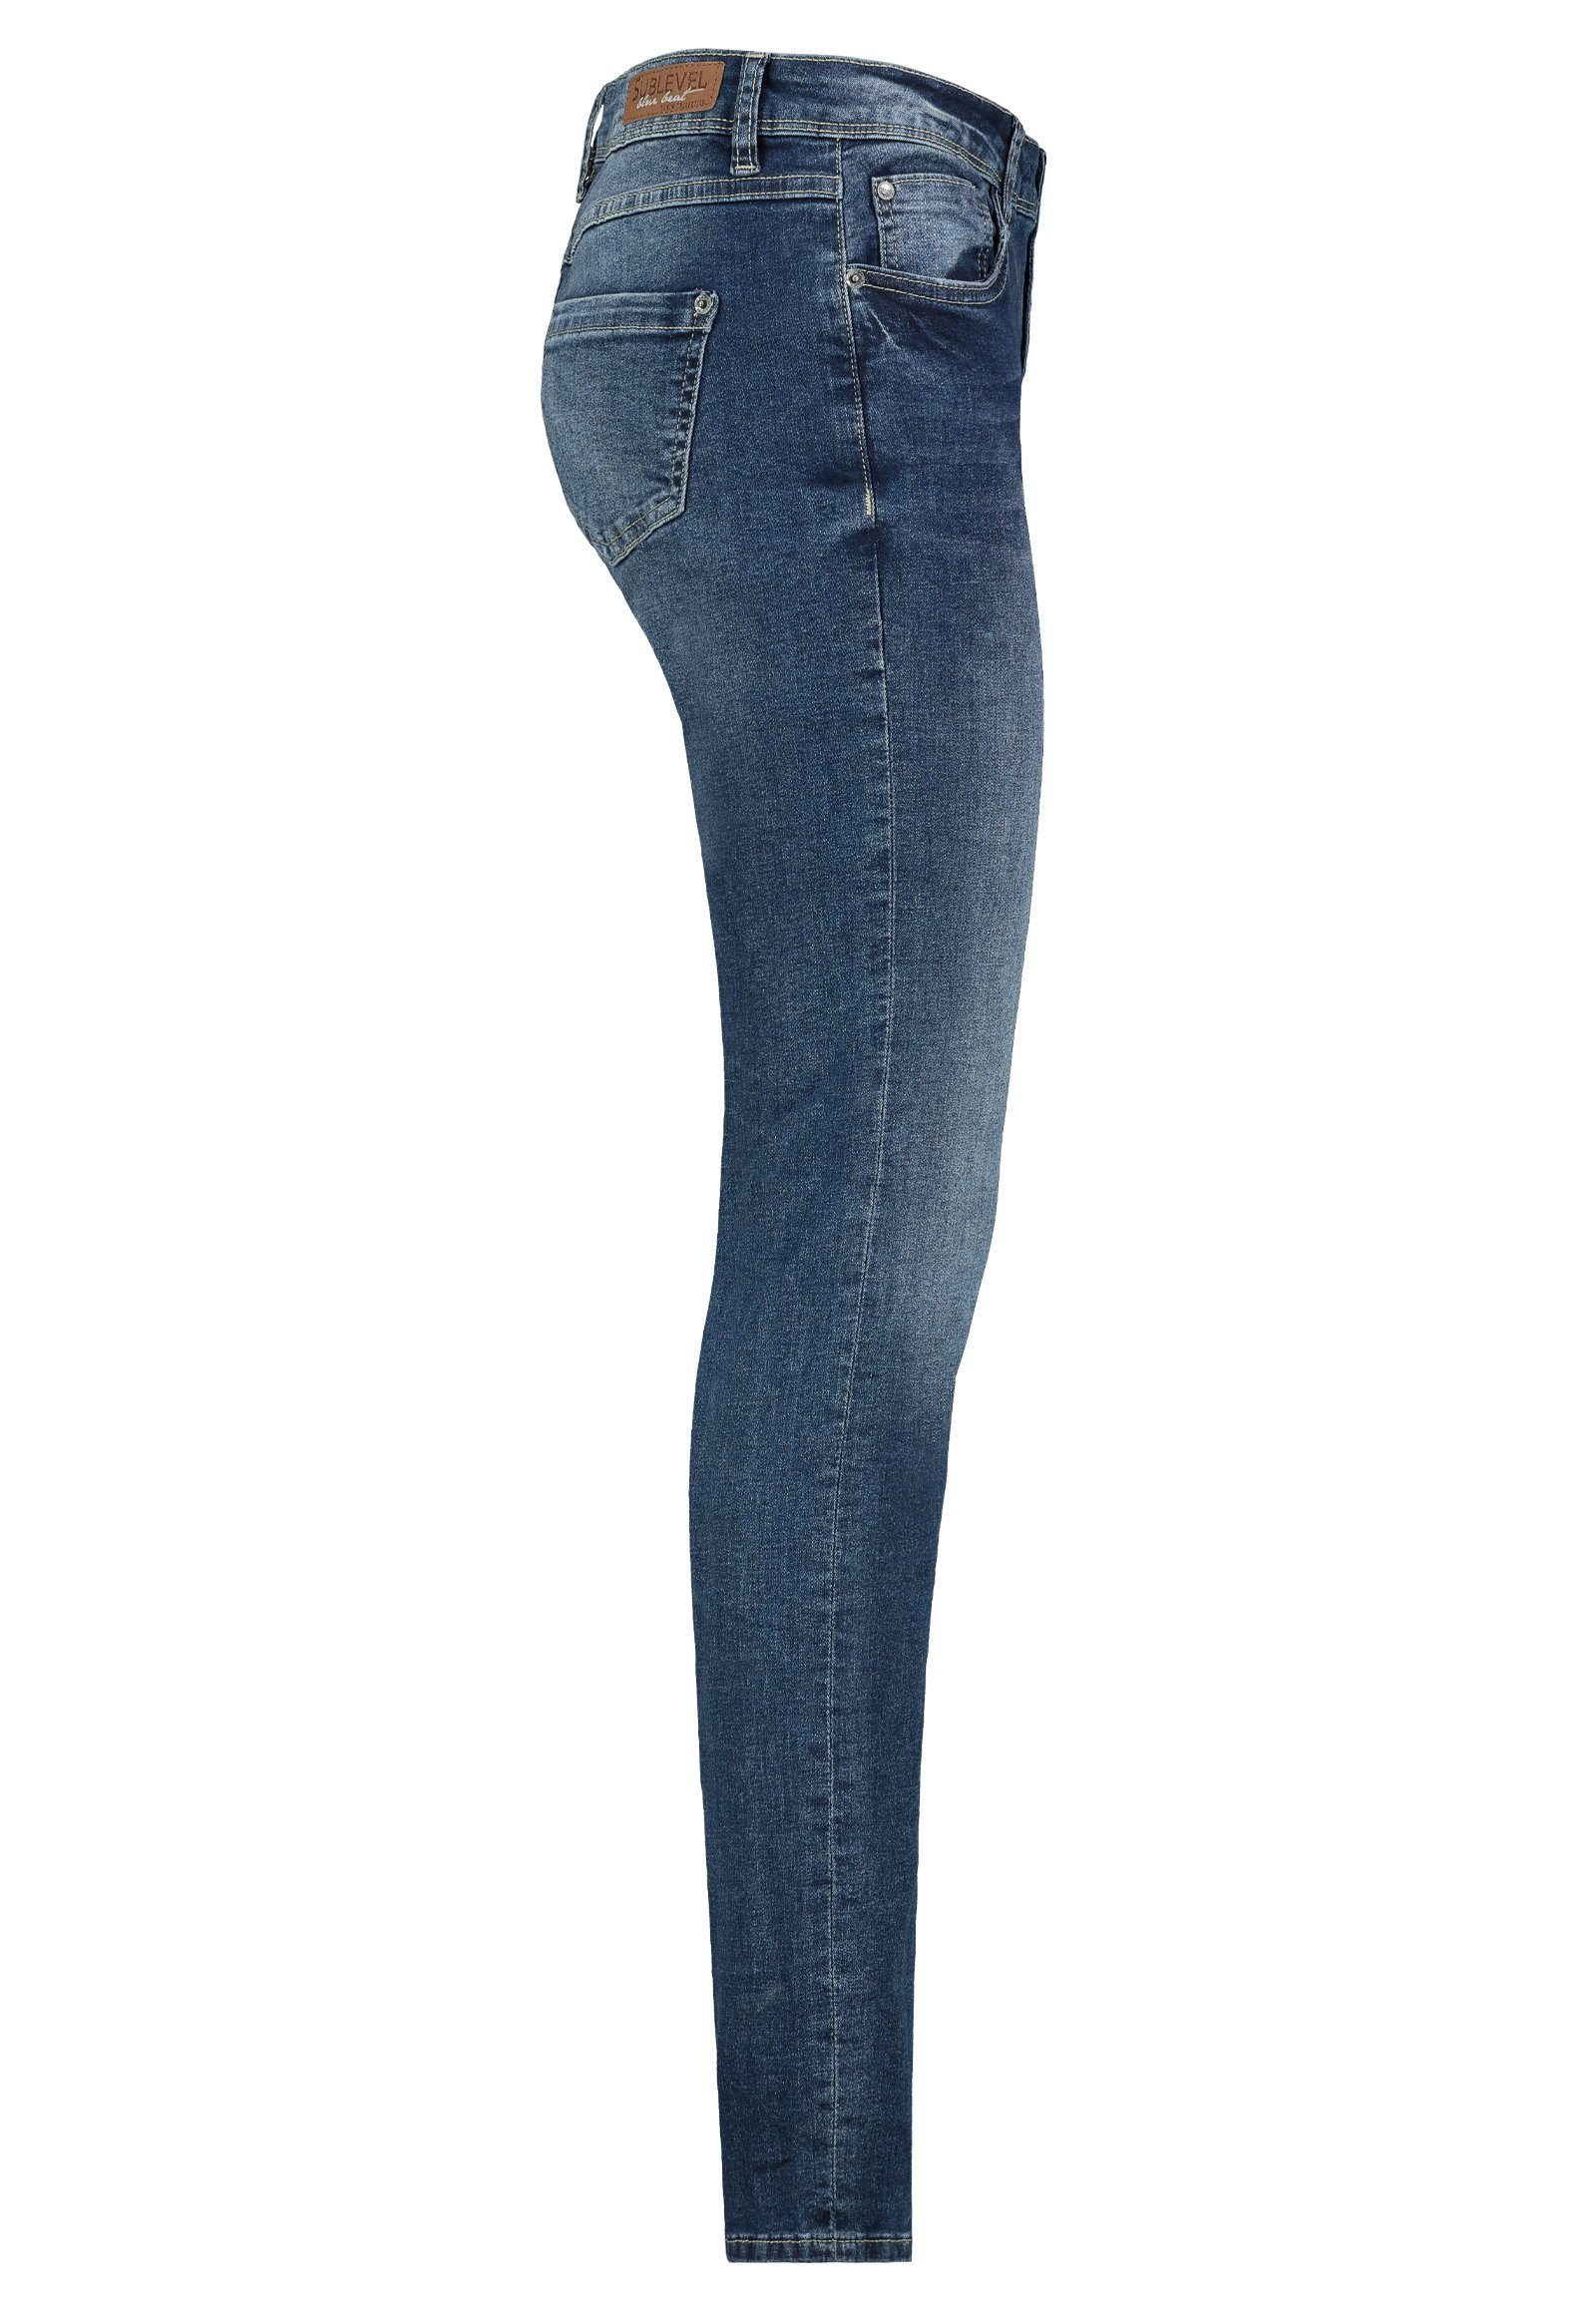 Jeans Blue Middle Damen Sublevel SUBLEVEL Hose Slim Slim-fit-Jeans Jeanshose Denim Stretch Röhre Fit Hose